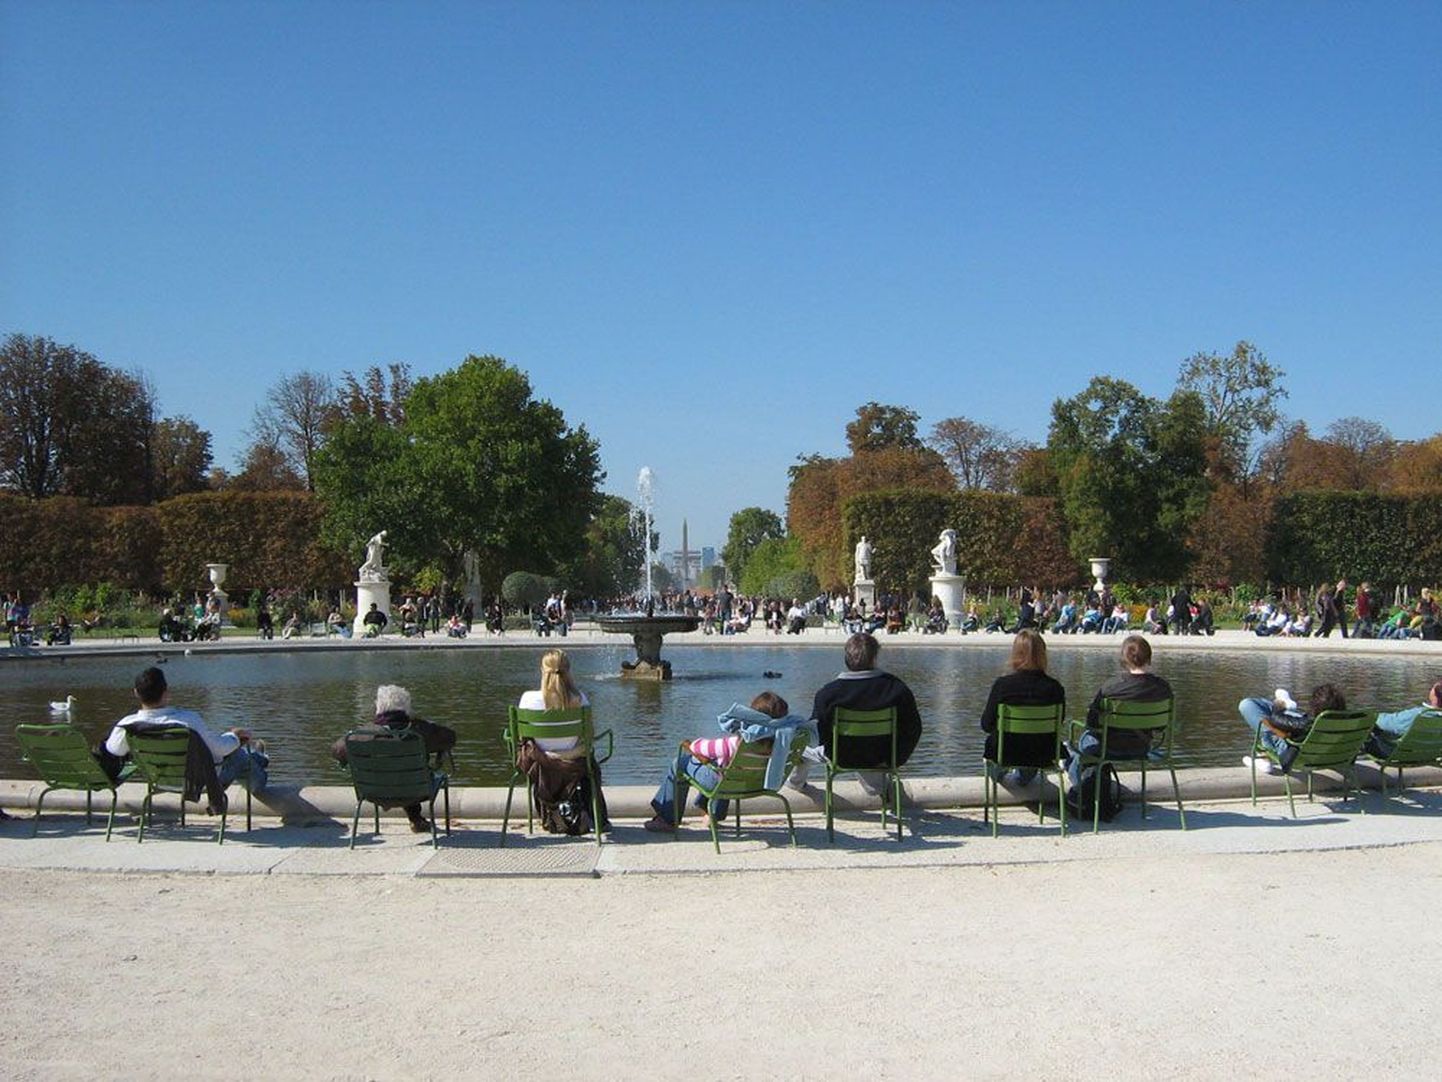 Pariisis kuulsa kunstimuuseumi Louvre’i vastas asuva Jardin de Tuileries’ tiigiäärsed pingid pakuvad mõnusat puhkamisvõimalust neile paljudele turistidele, kes seda maagilist ja maalilist linna avastades oma jalad villi on kõndinud.